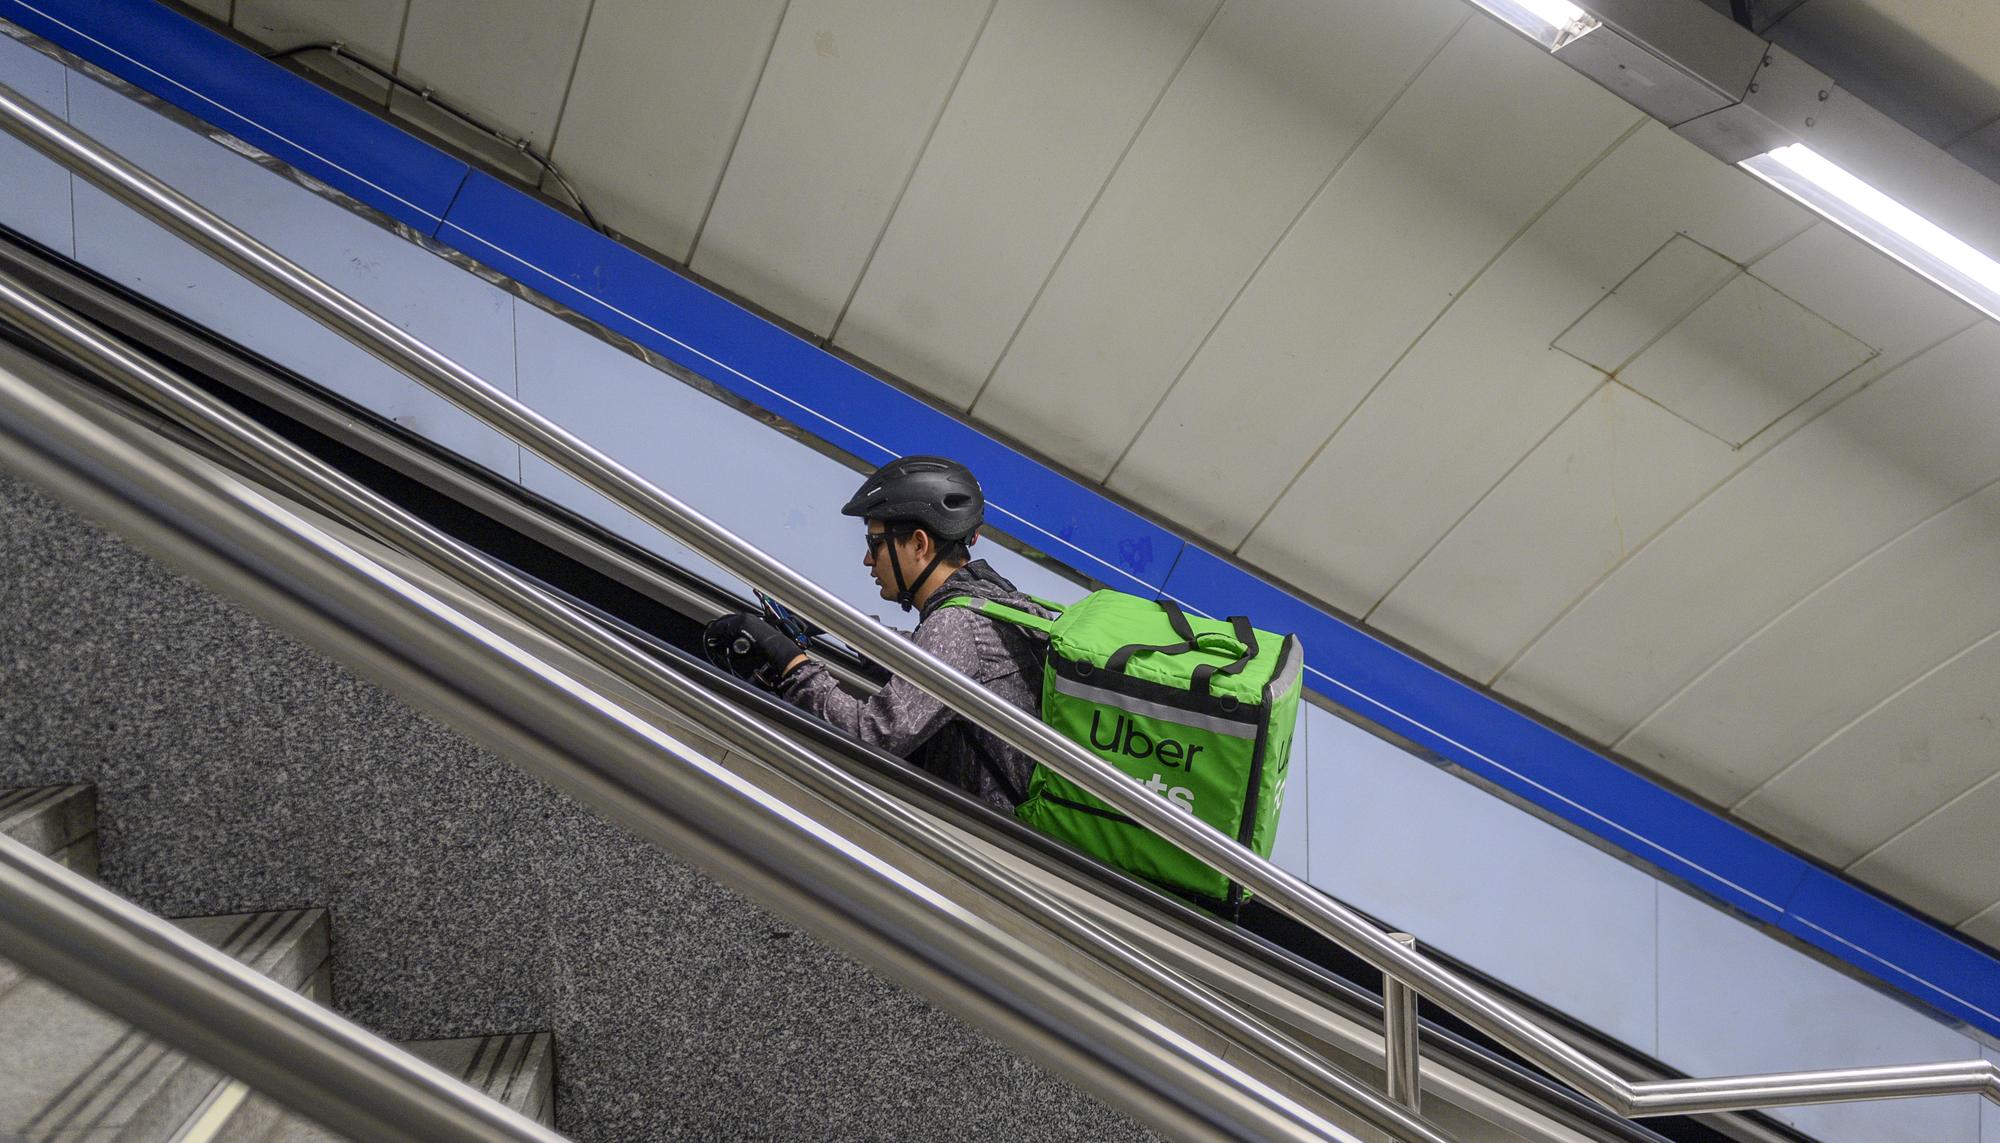 Rider en el metro